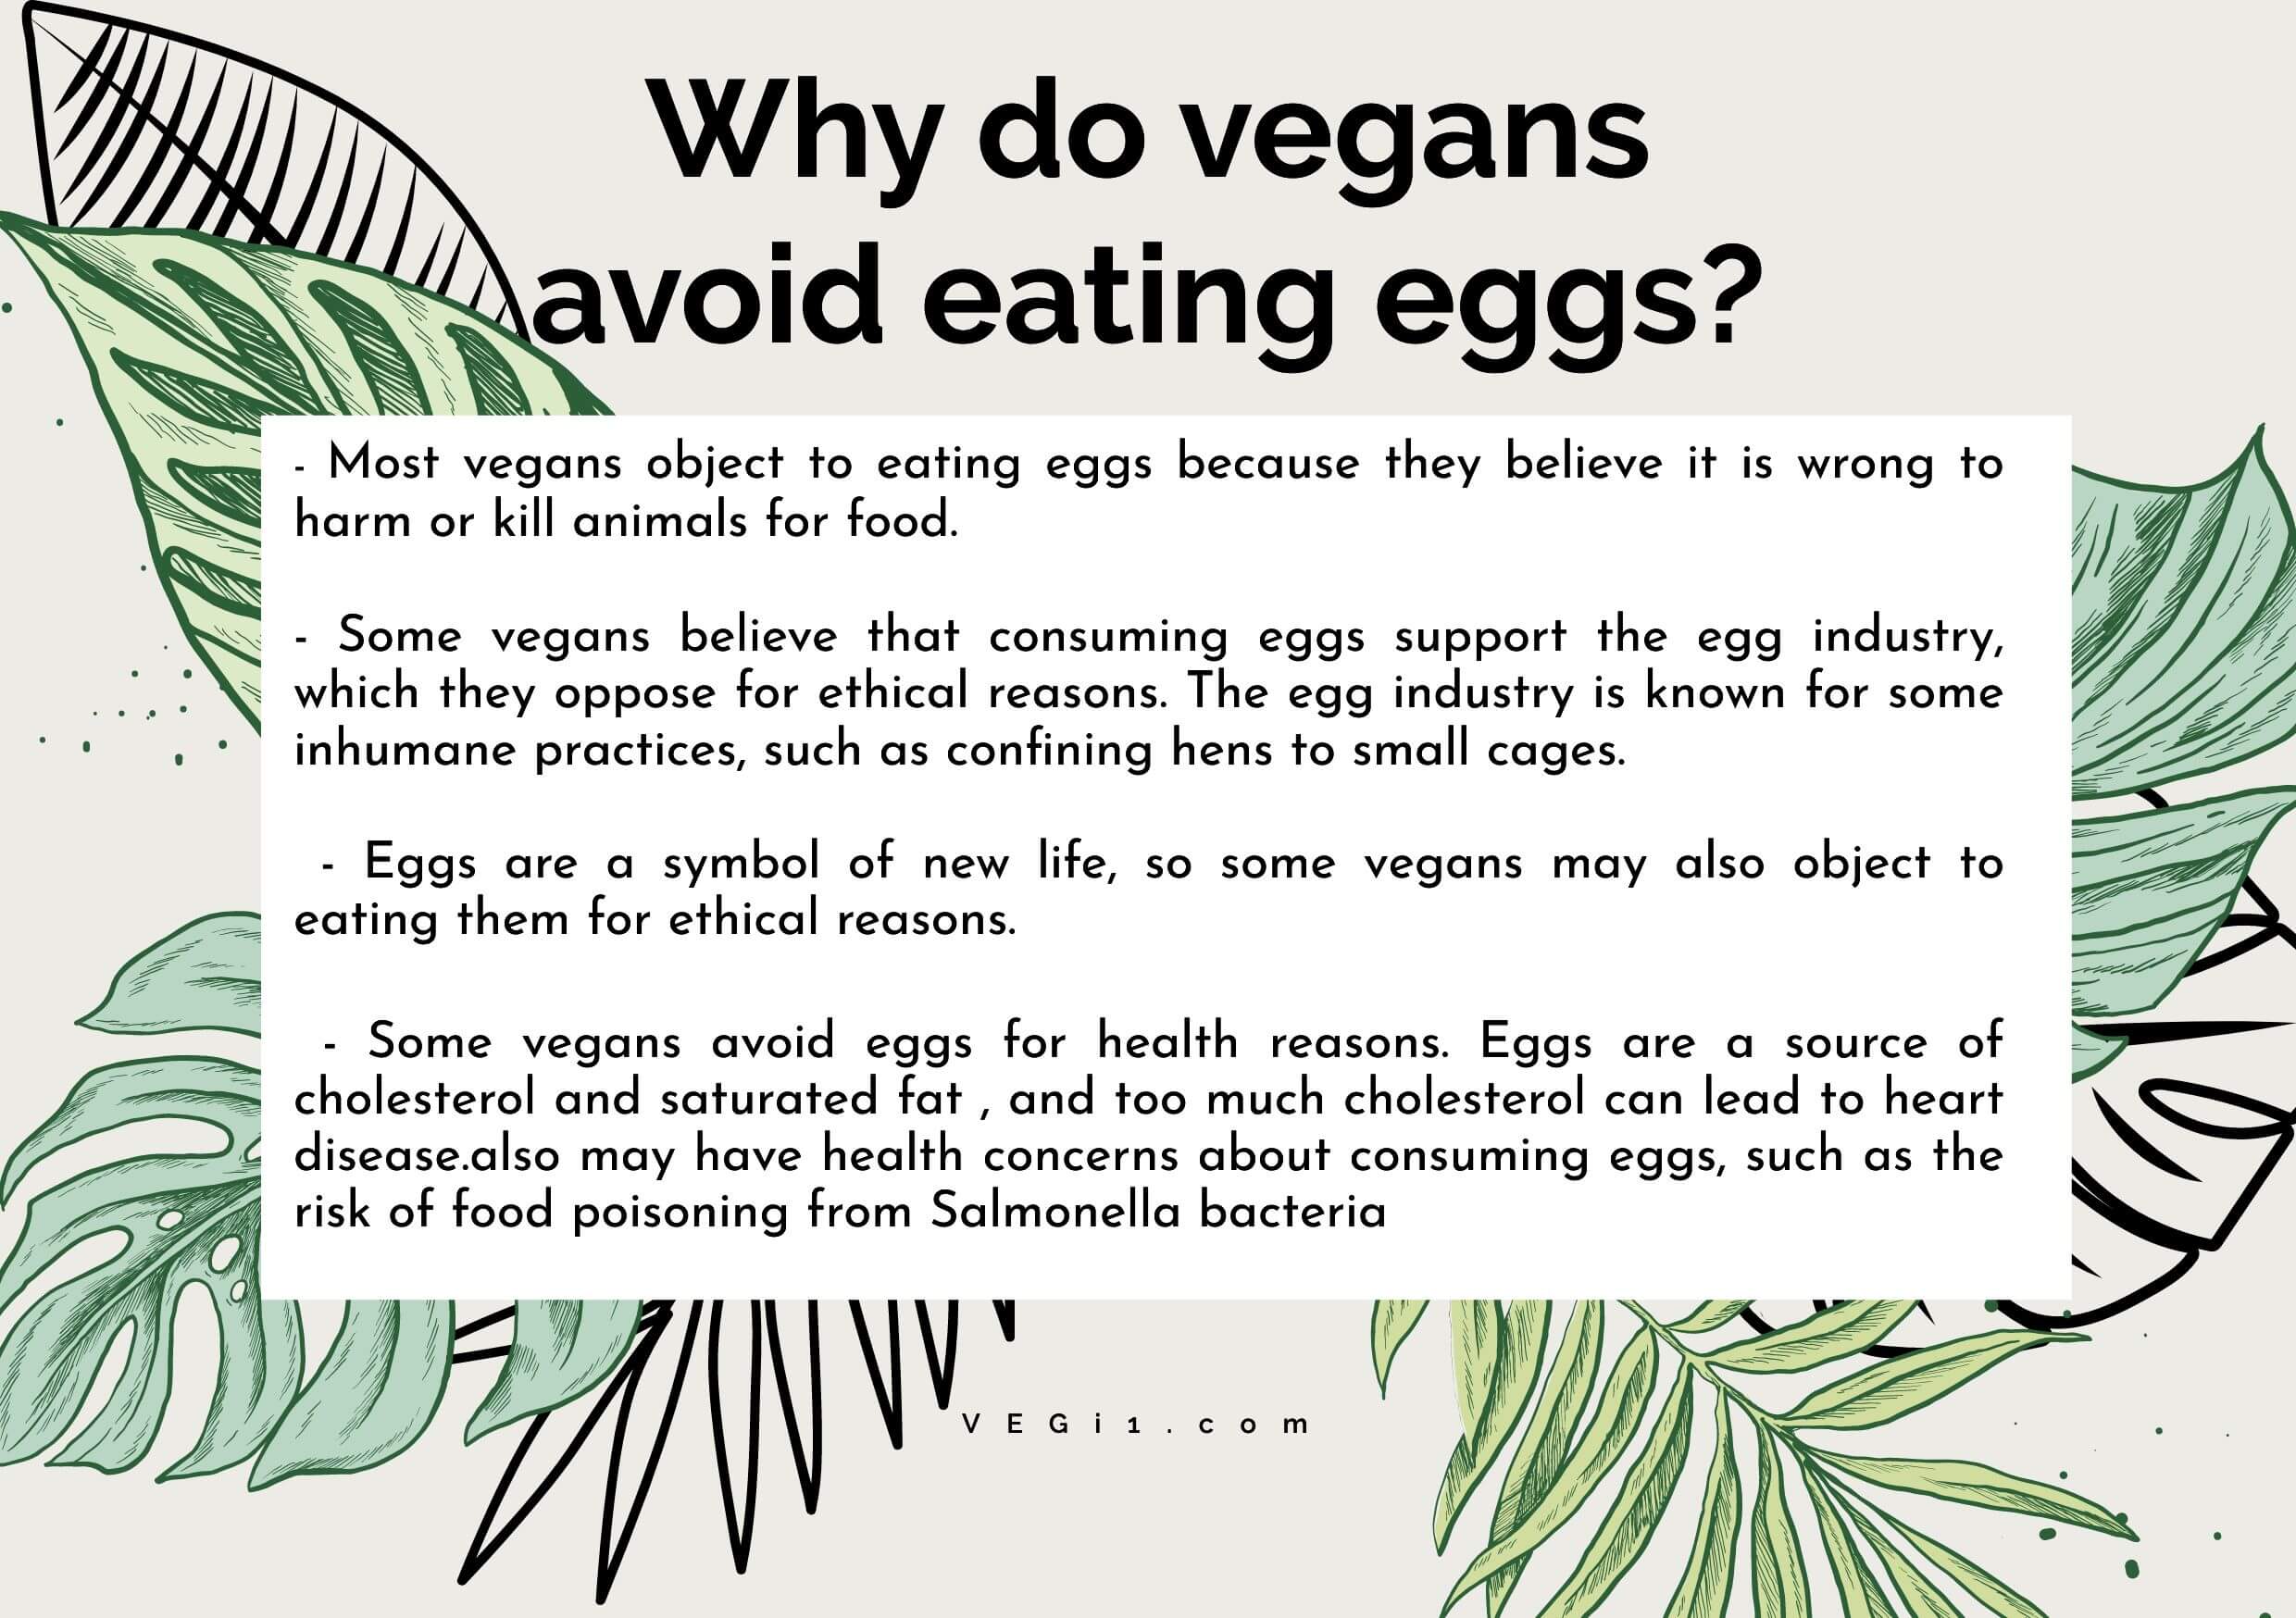 Why do vegans avoid eating eggs